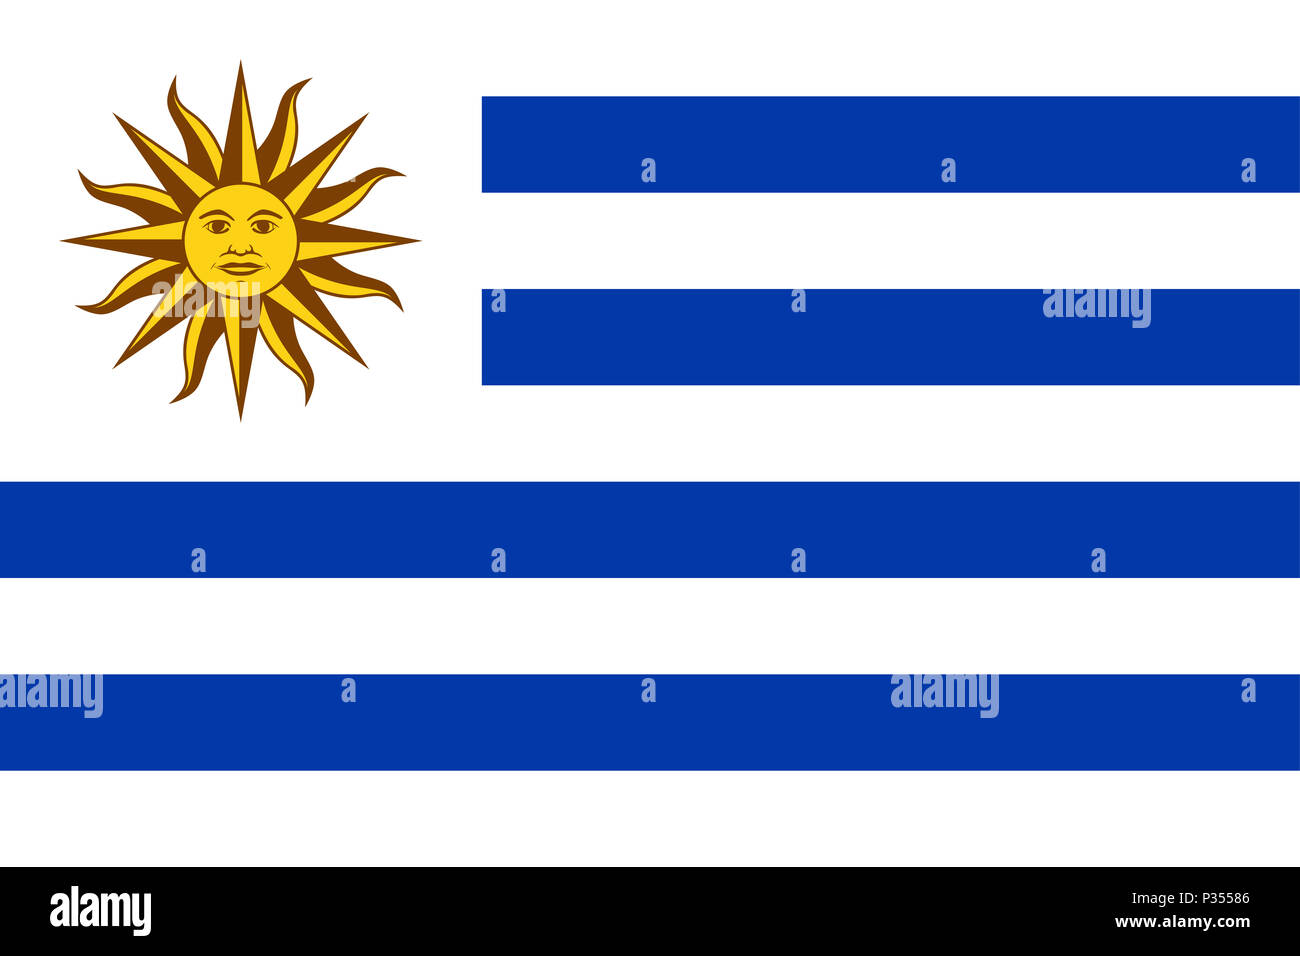 Bandiera Nazionale dell Uruguay con sole di maggio su un cantone bianco e nove strisce orizzontali, alternando bianco e blu. Sol de Mayo, un emblema nazionale. Foto Stock